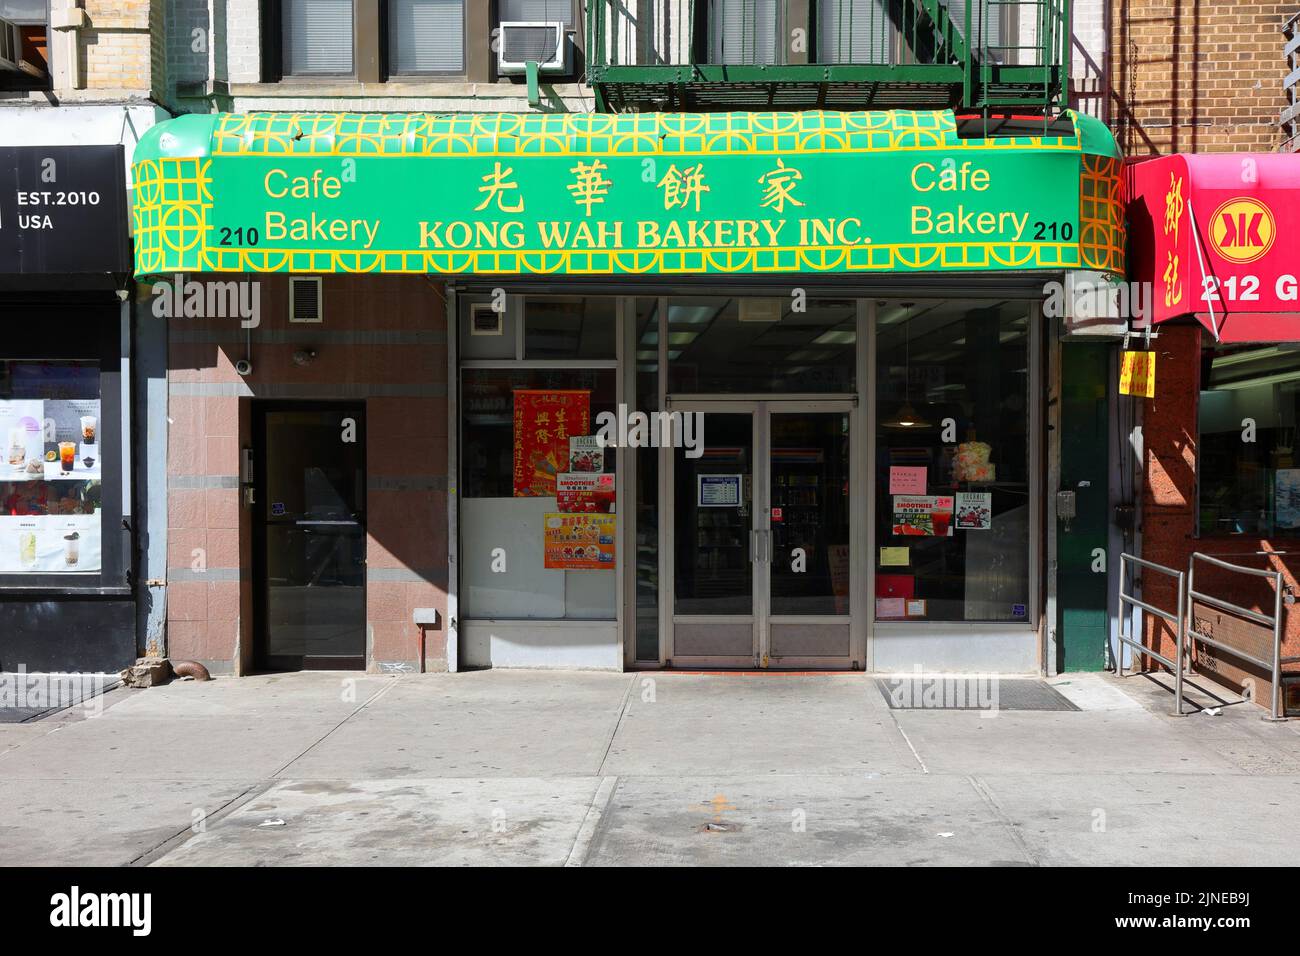 Kong Wah Bakery, 光華餅家, 210 Grand St, New York, NYC Schaufensterfoto einer chinesischen Bäckerei in Manhattan Chinatown. Stockfoto